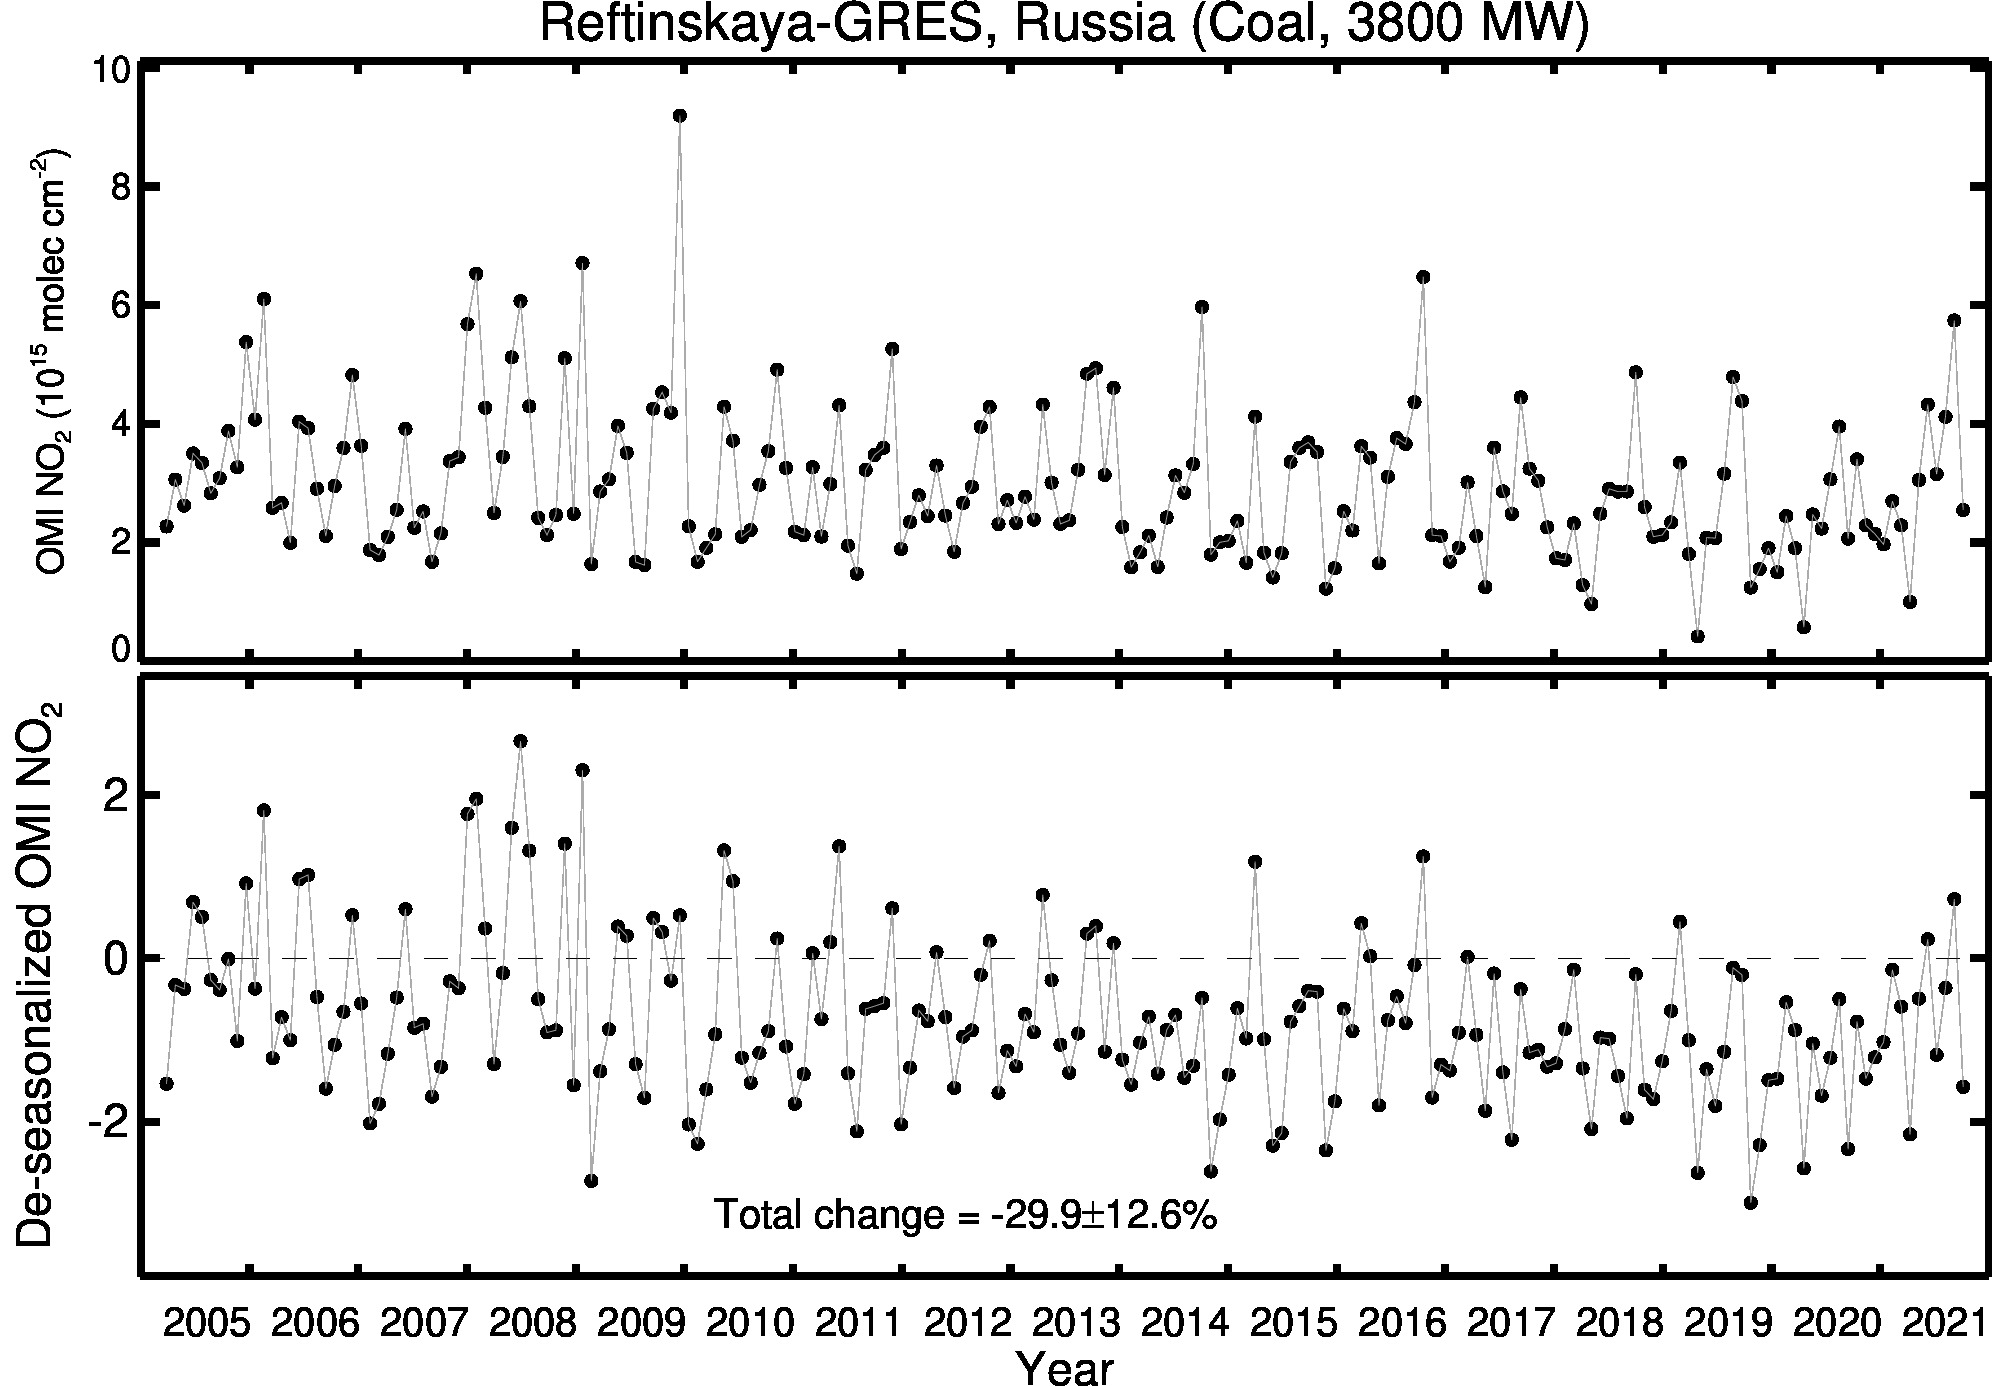 Reftinskaya GRES Line Plot 2005-2021